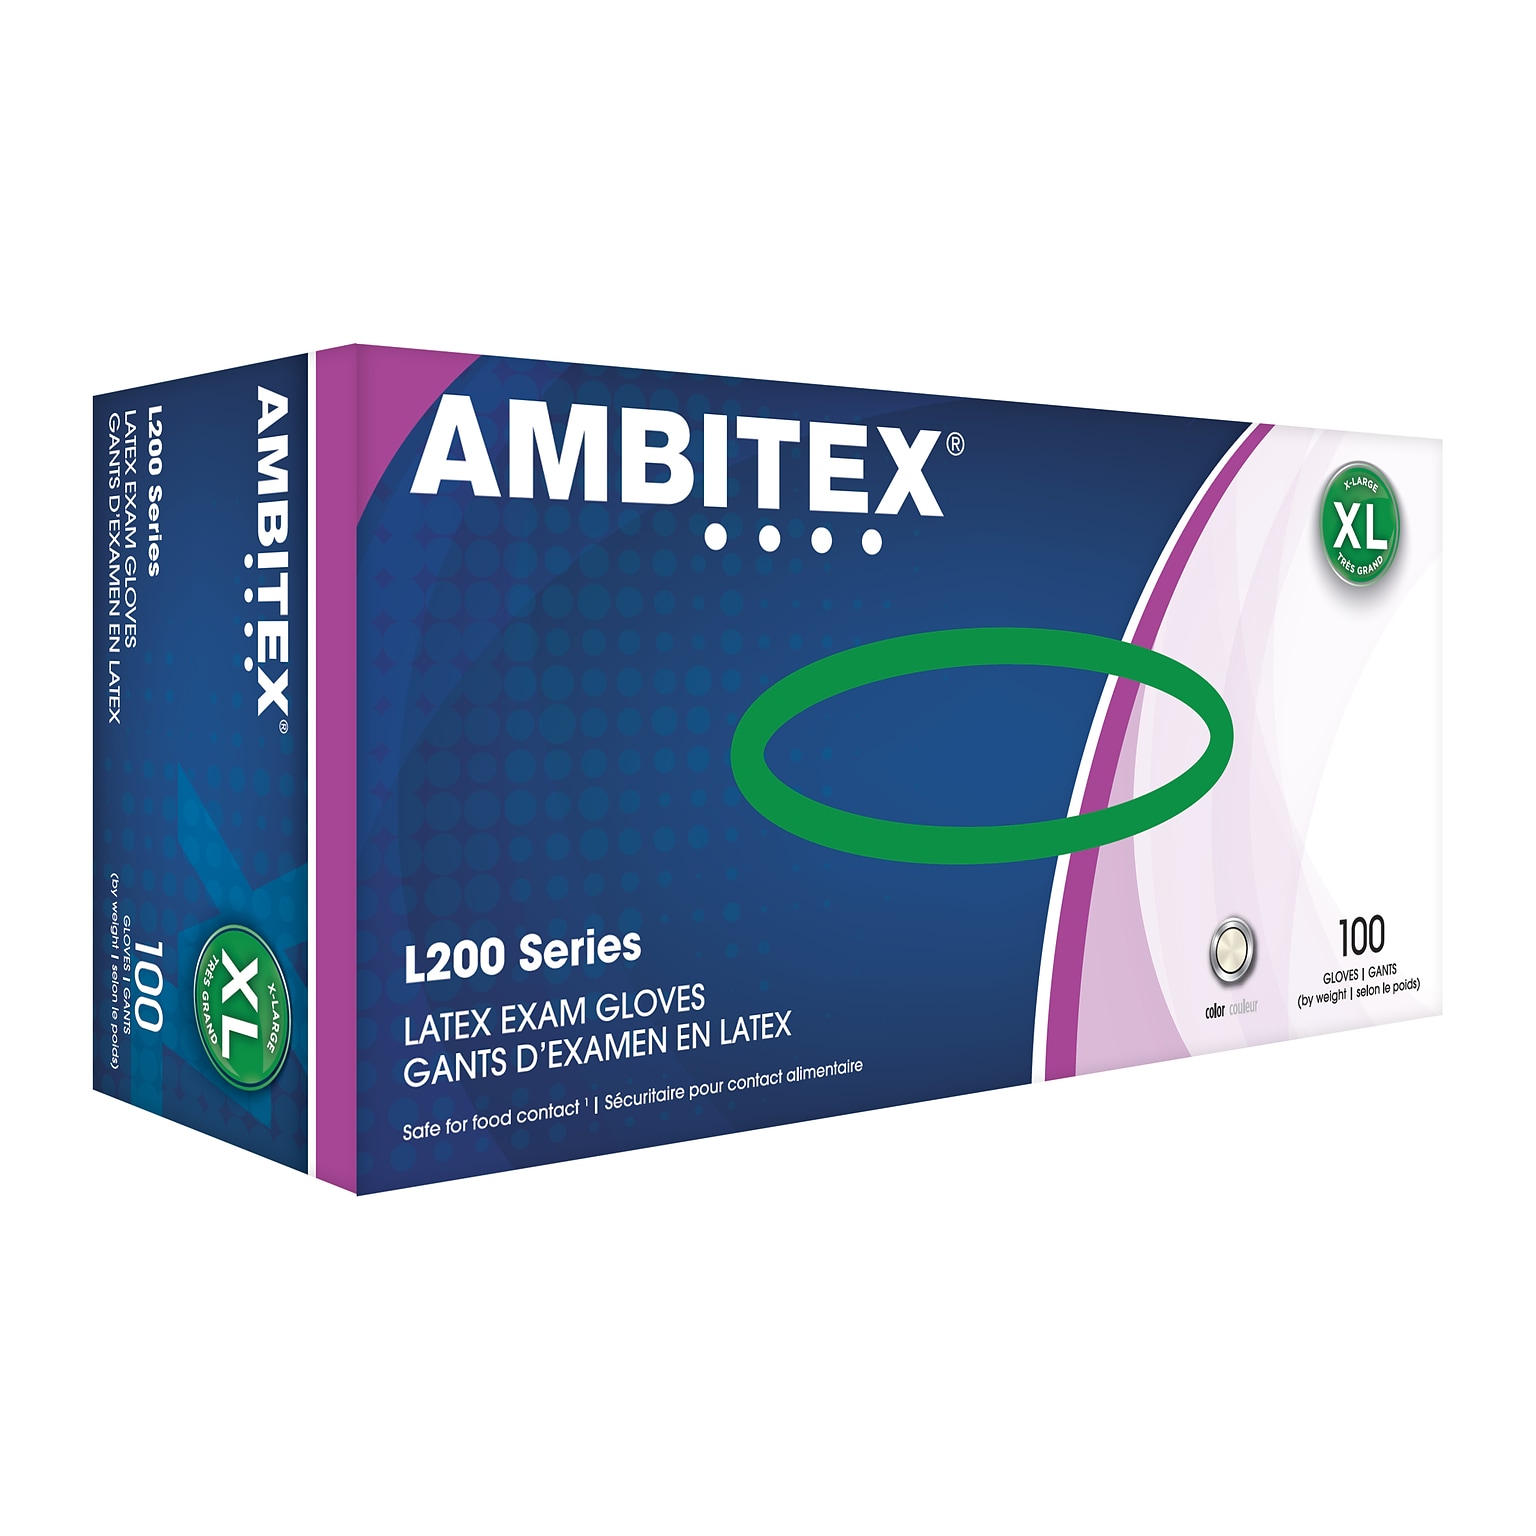 Ambitex L200 Series Powder Free Cream Latex Gloves, XL, 100/Box (LXL200)